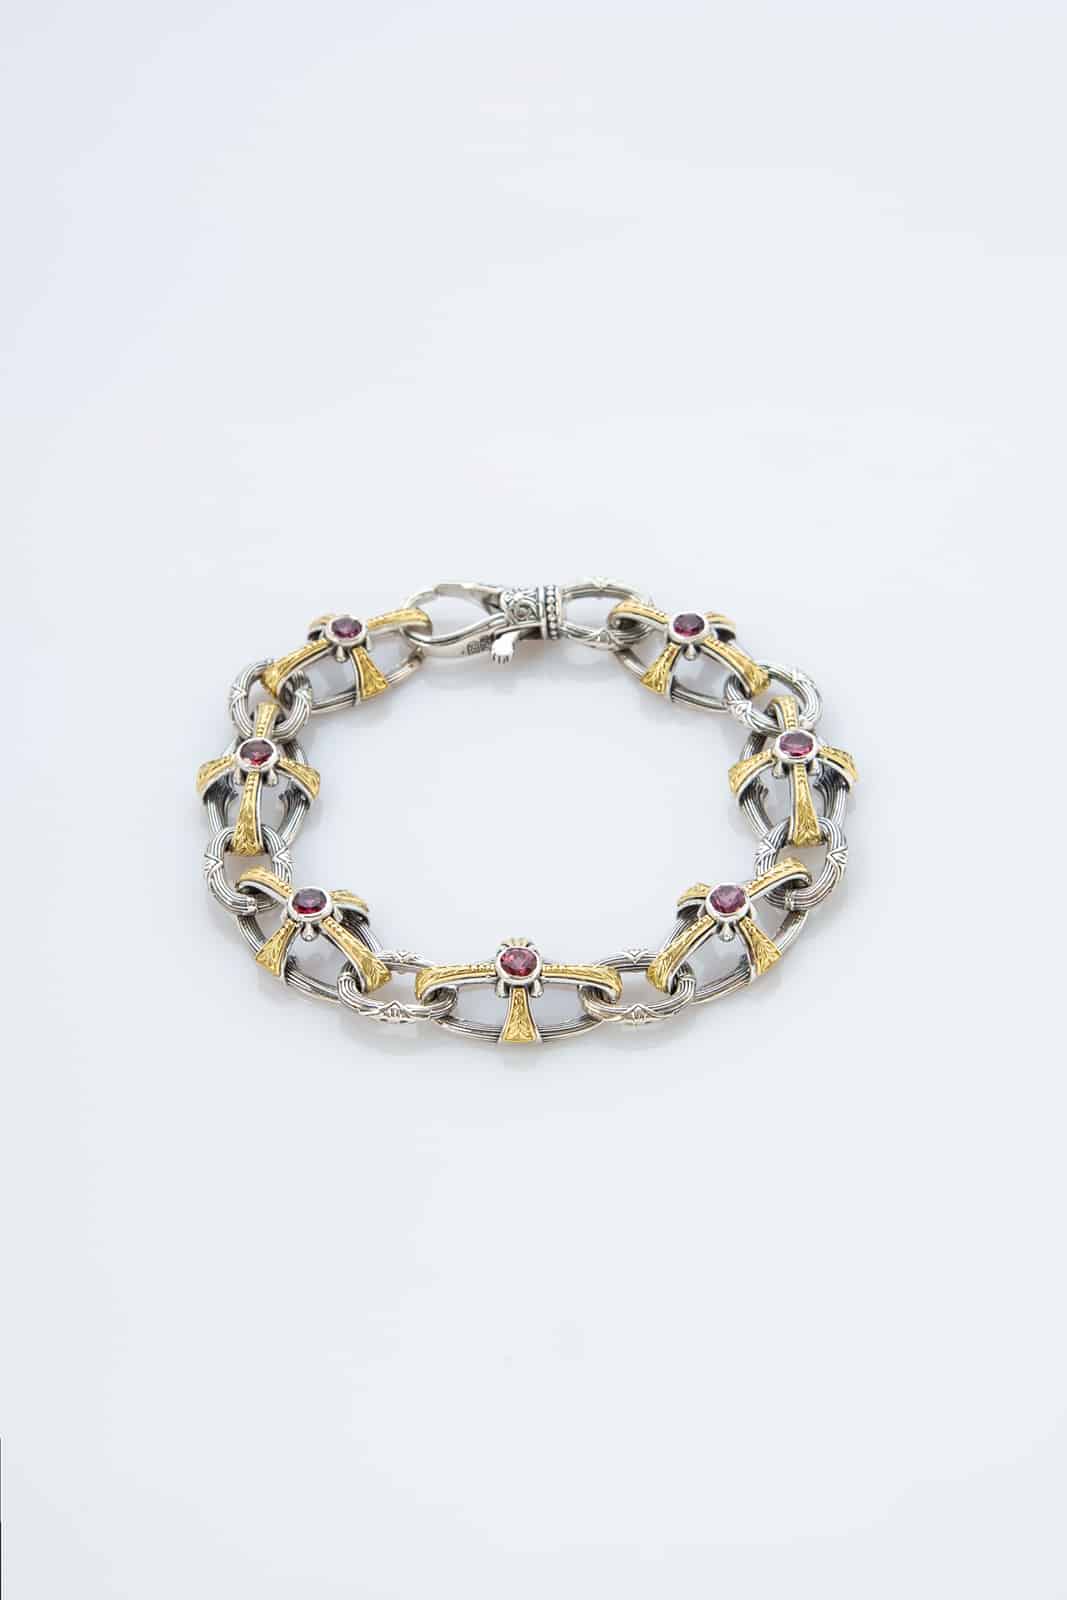 Cruciform Chain Rhodolite bracelet